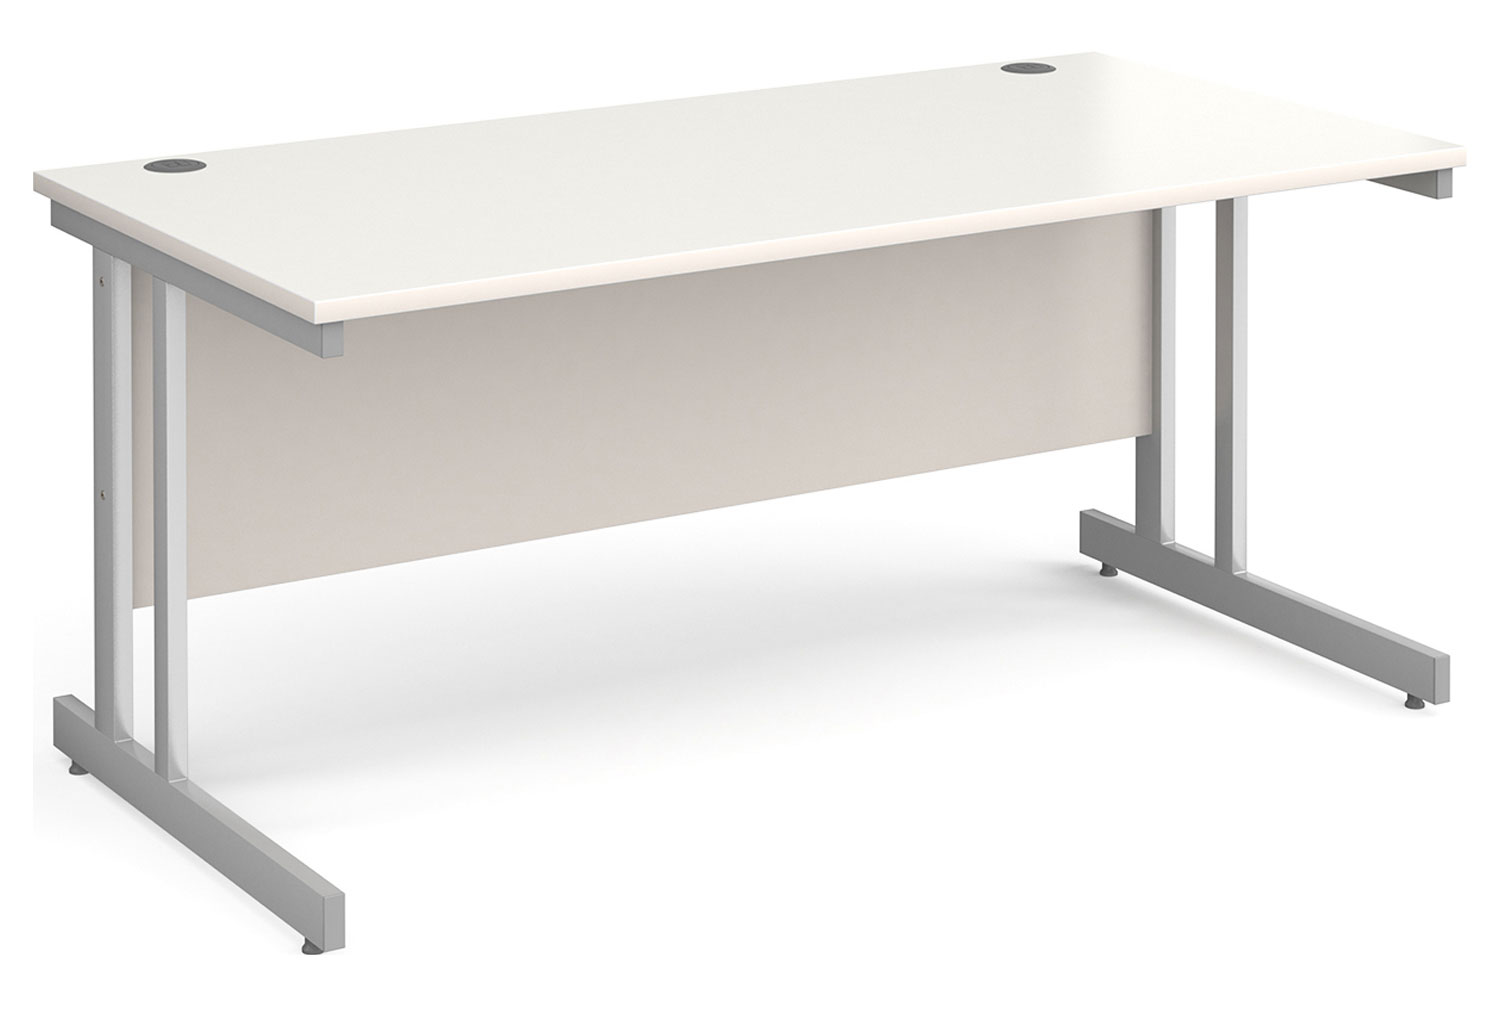 Tully II Rectangular Office Desk, 160wx80dx73h (cm), White, Fully Installed